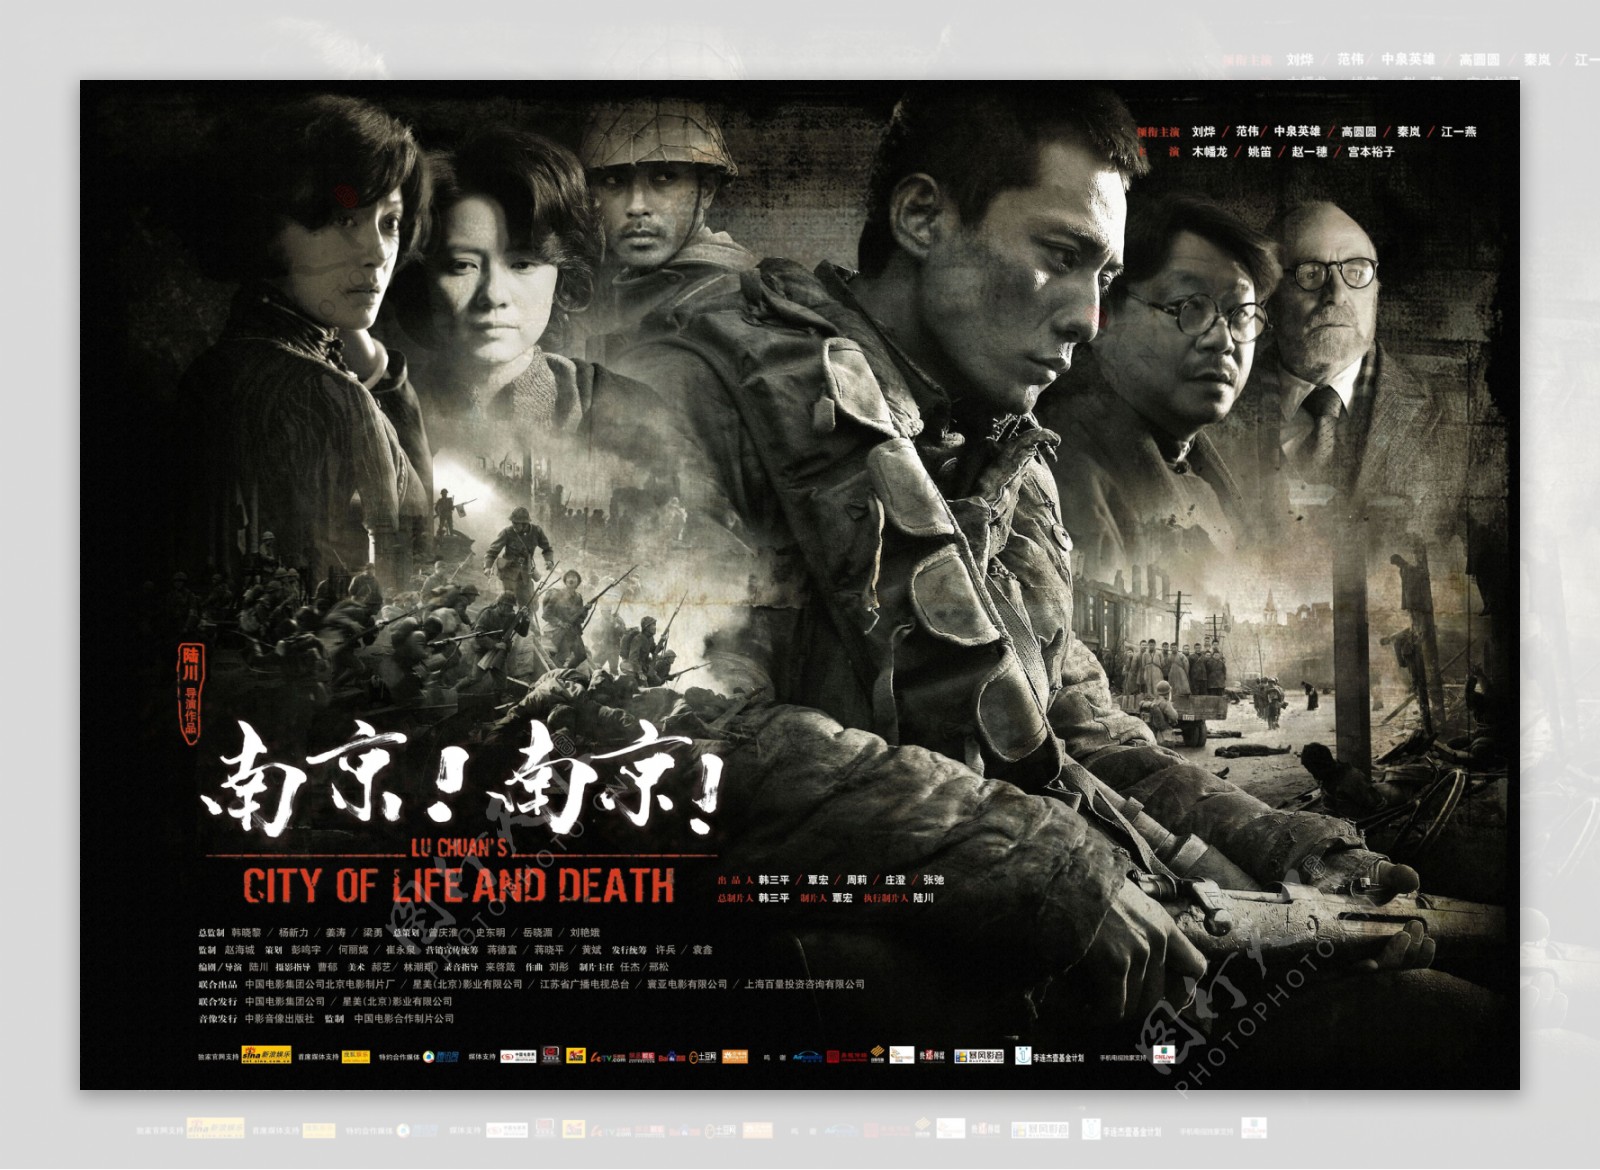 1995年吴子牛导演拍摄电影《南京大屠杀》里的片段中意外发现一门德造